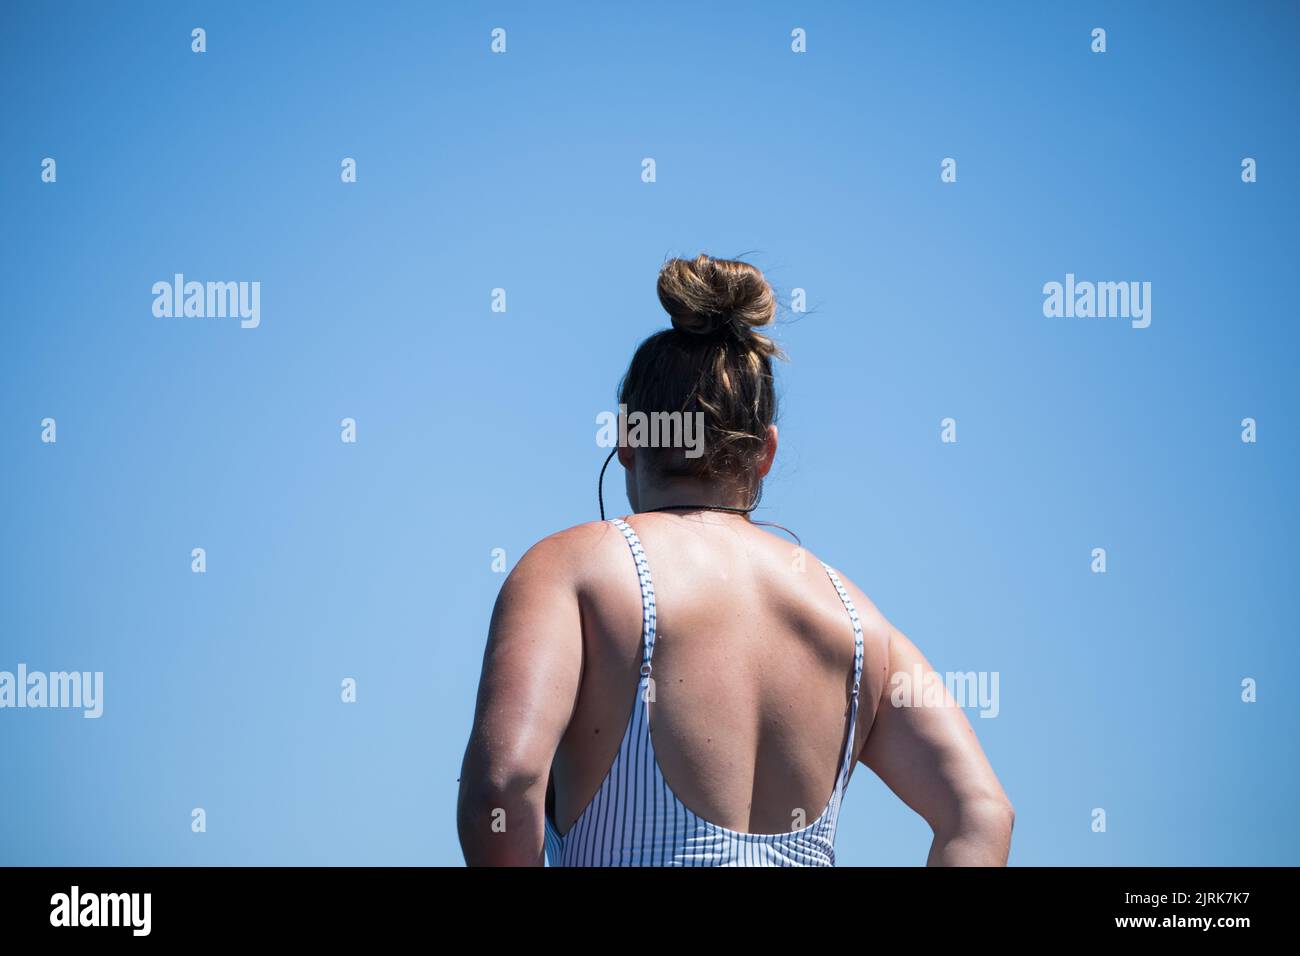 Un faible angle d'une femelle caucasienne vue de derrière, dans un maillot de bain contre un ciel bleu Banque D'Images